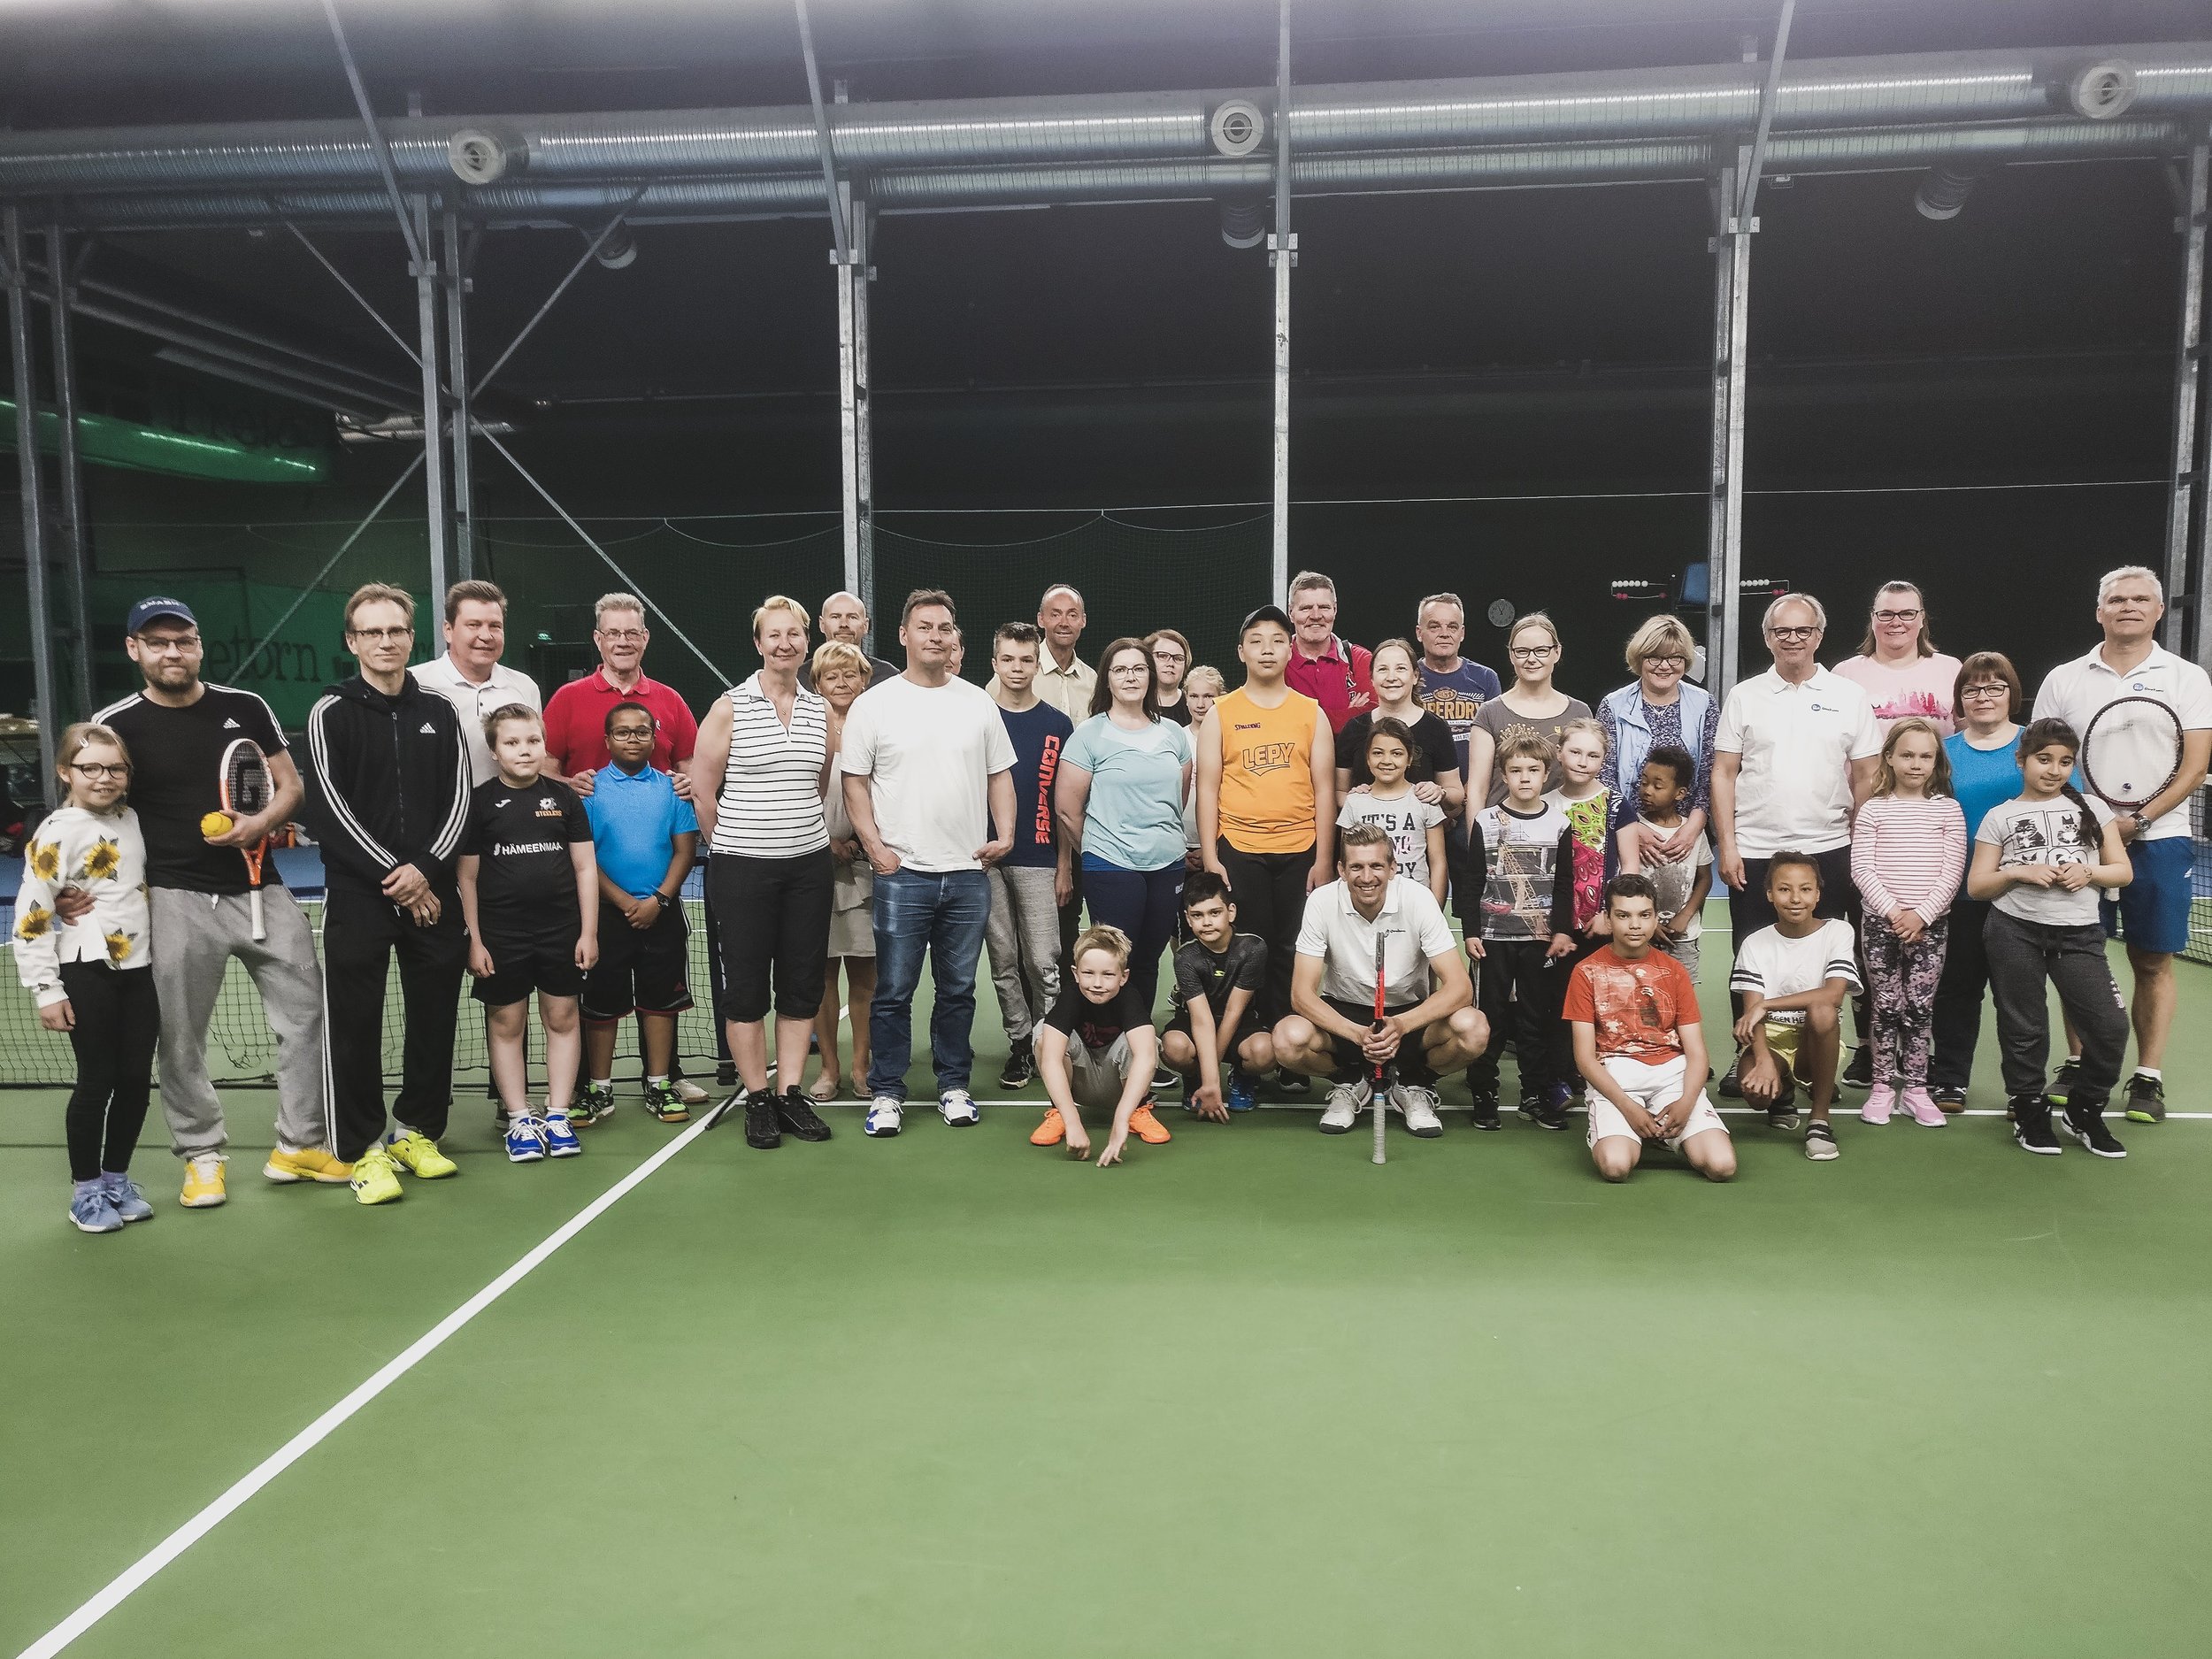 OmaKamun tennistapahtuma lapsille, nuorille ja aikuiskavereille. Ohjaamassa Jarkko Nieminen.